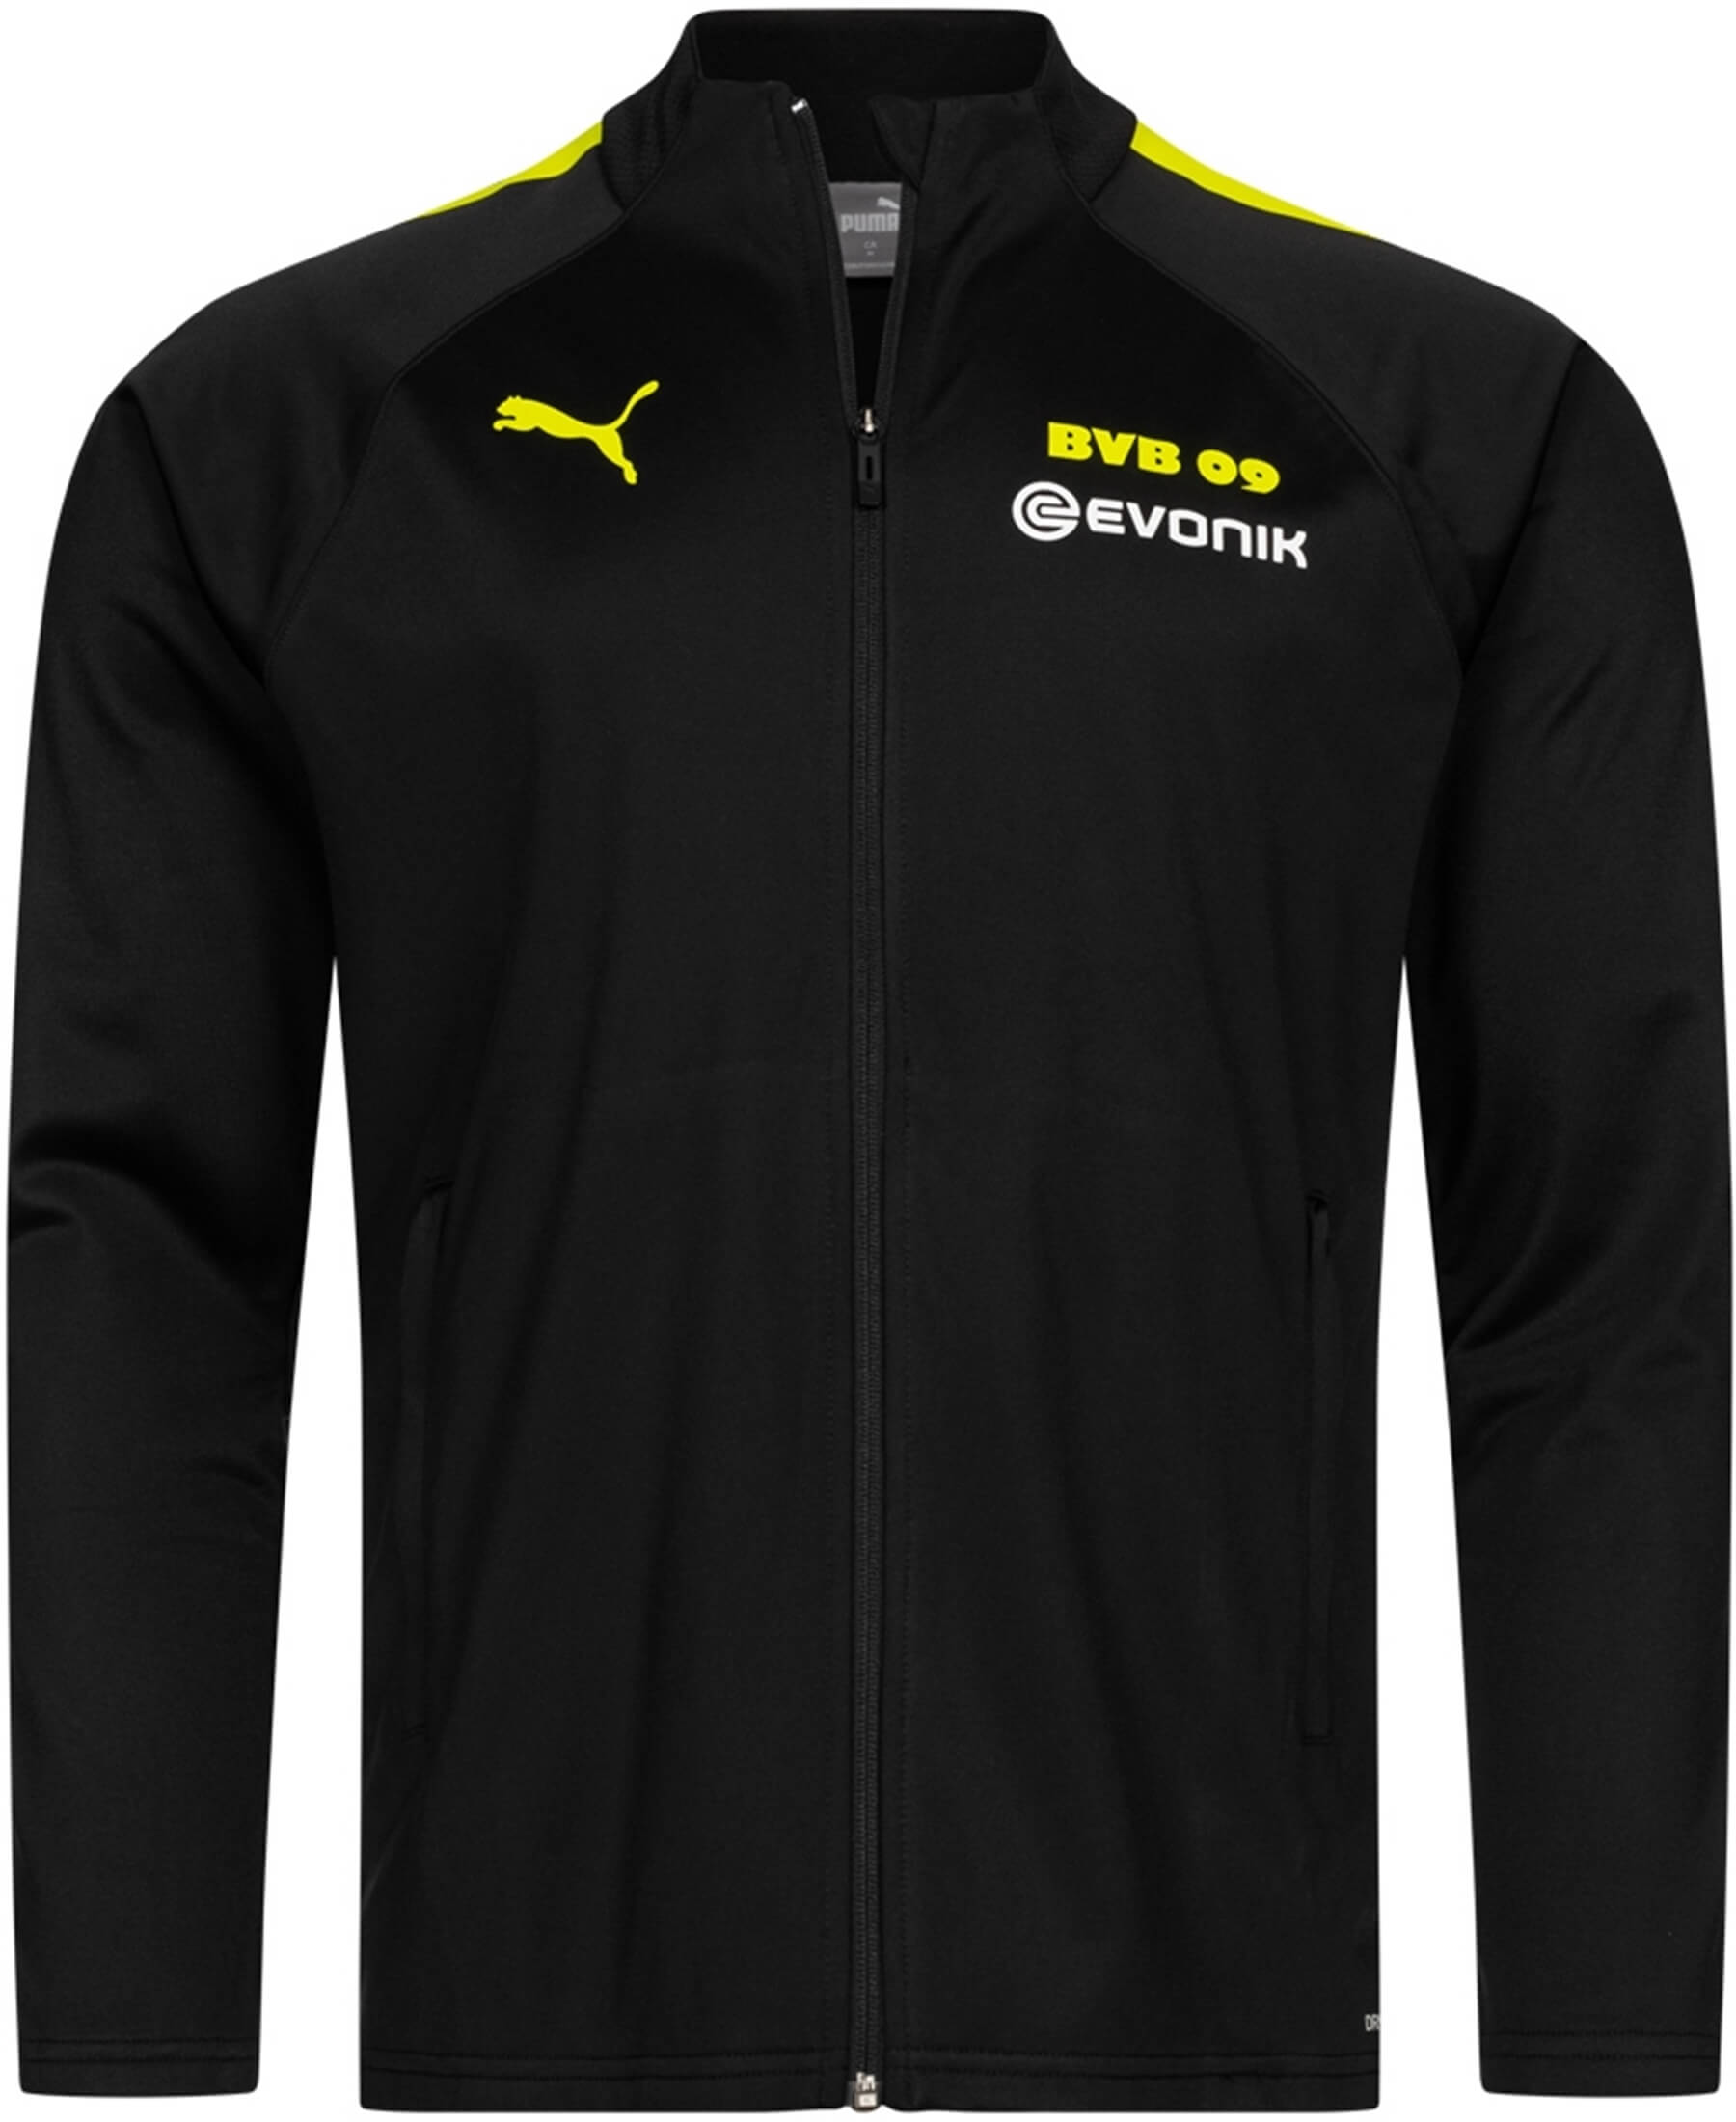 Puma Borussia Dortmund BVB Trainingsjacke 2021/2022 (Artikelnummer: 759073-05) - Hochwertige Trainingsjacke im BVB-Design. Perfekte Mischung aus Stil und Funktionalität. Unterstütze deinen Verein mit diesem offiziellen Fanartikel. Entdecke die neuesten Teamkollektionen bei SHOP4TEAMSPORT. Jetzt bestellen und deine Leidenschaft zeigen!